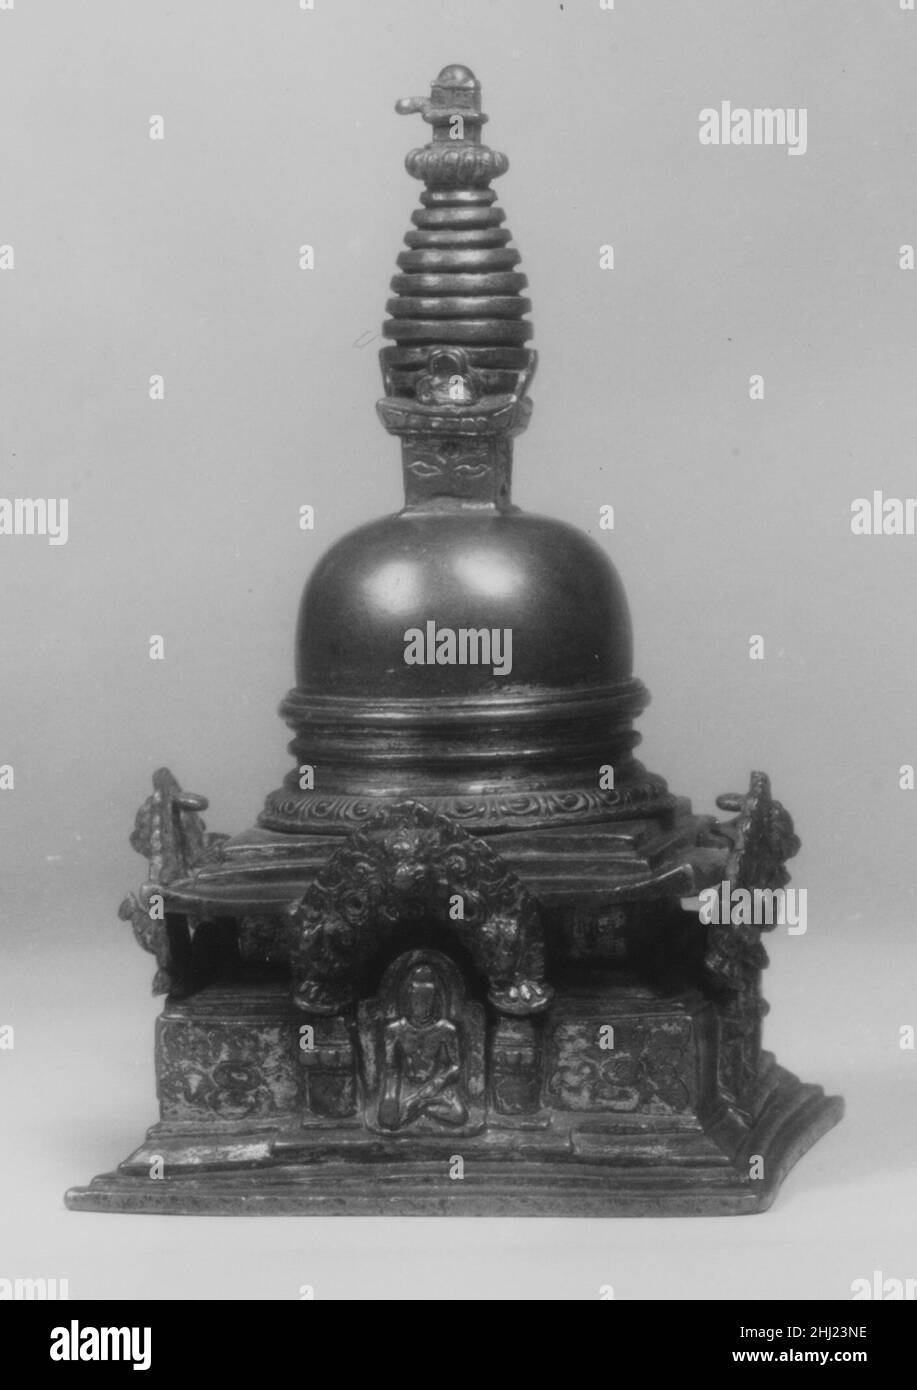 Modello di una Stupa ca. 16th secolo Nepal (valle di Kathmandu) questo stupa in miniatura ha quattro santuari alla base, ciascuno che ospita un Buddha meditante. Gli occhi sono incisi sui quattro lati della sezione quadrata harmika tra la cupola e gli ombrelloni a più livelli, come visto a Swayambhunath stupa e altrove nella valle oggi. Modello di Stupa 38342 Foto Stock